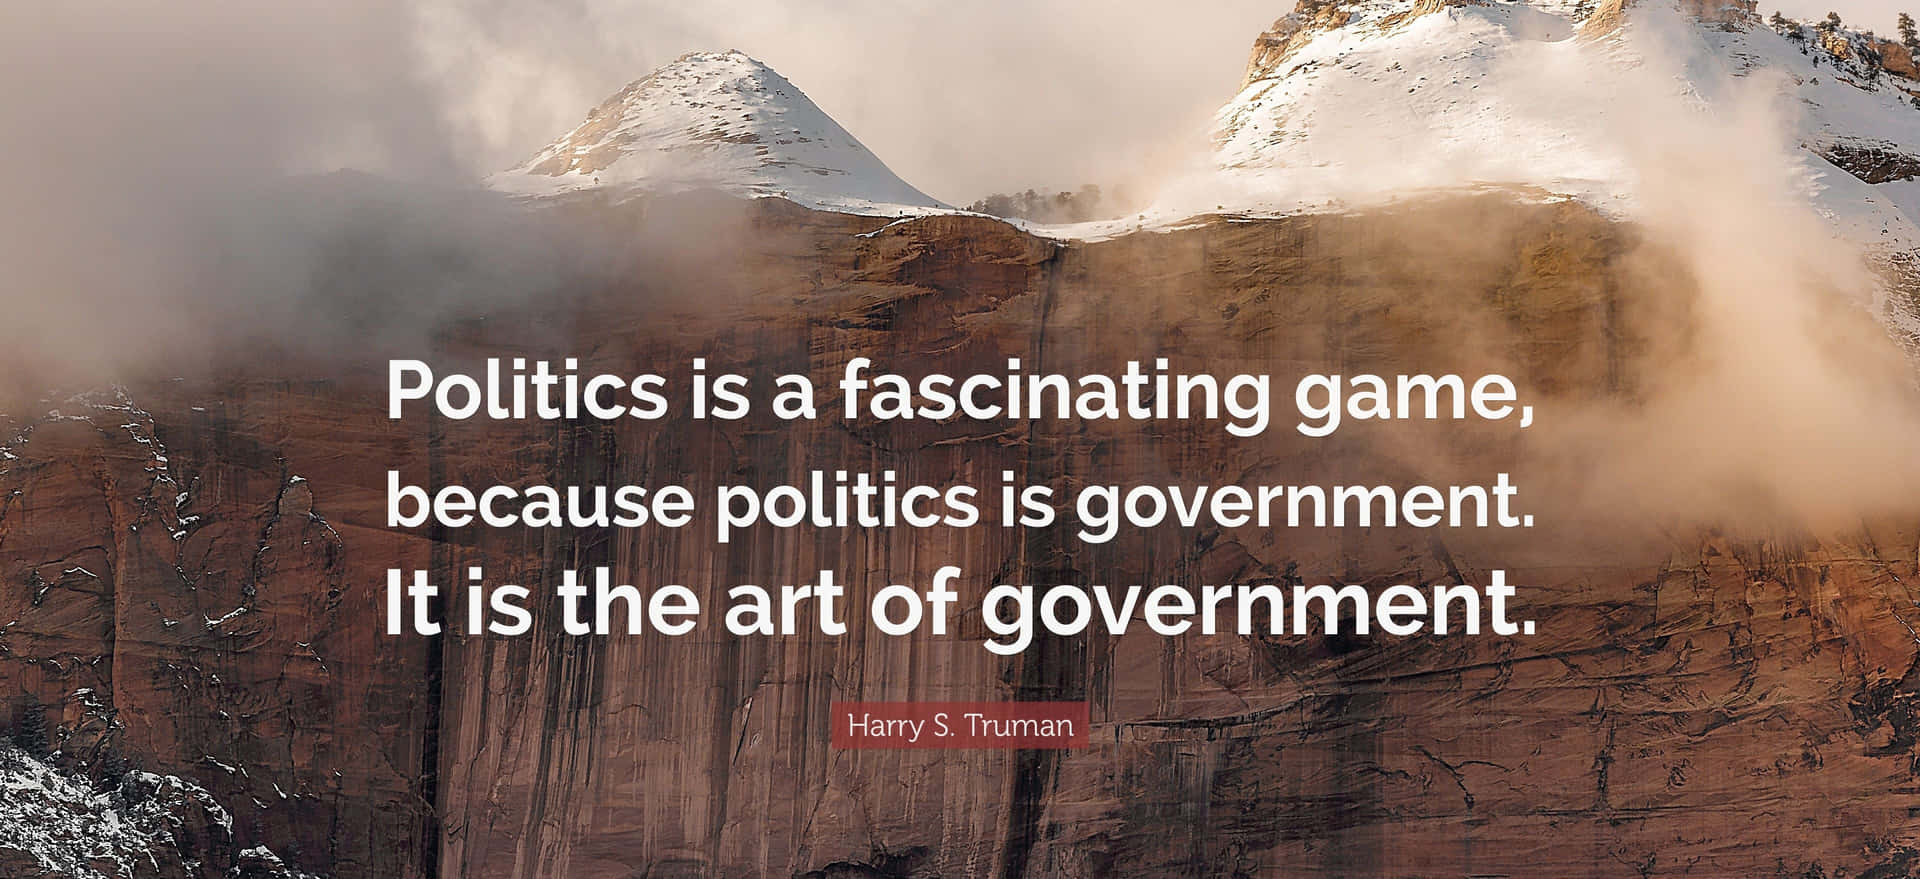 Politikist Ein Faszinierendes Spiel, Denn Politik Ist Regierung, Es Ist Die Kunst Der Regierung.